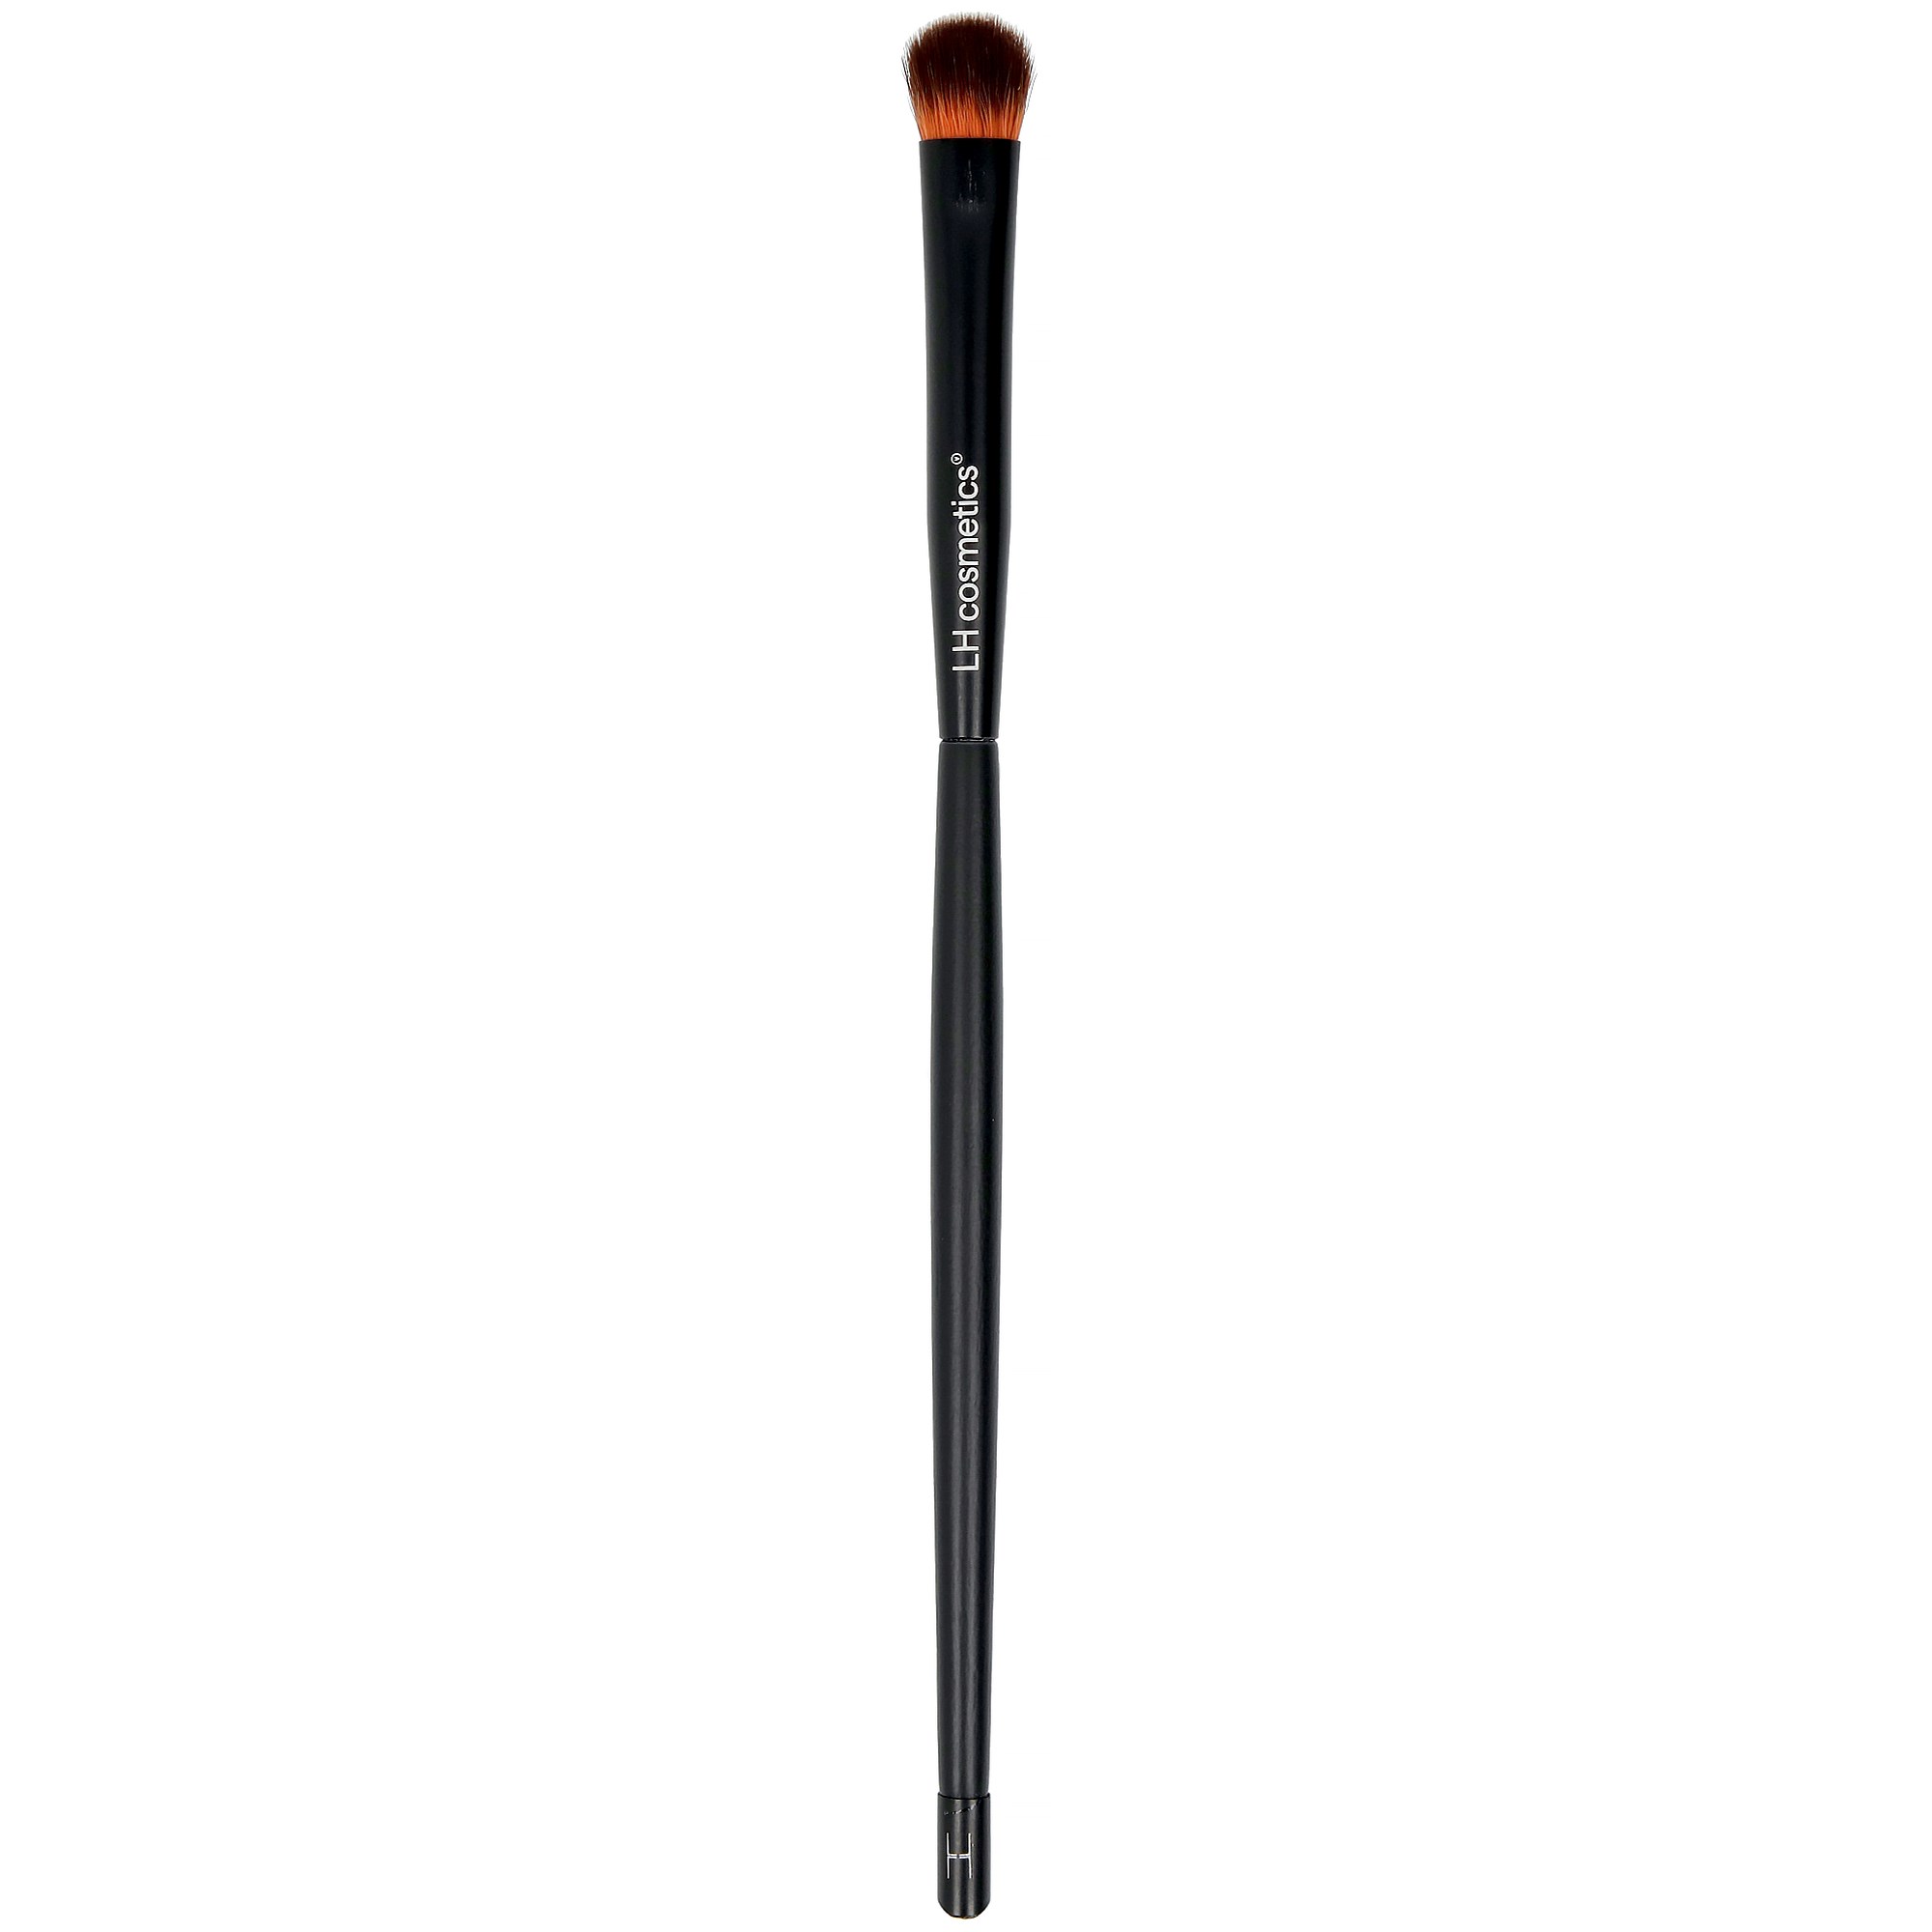 Zdjęcia - Pędzel / gąbka do makijażu LH cosmetics Brushes & Tools Blending Brush 303 Small